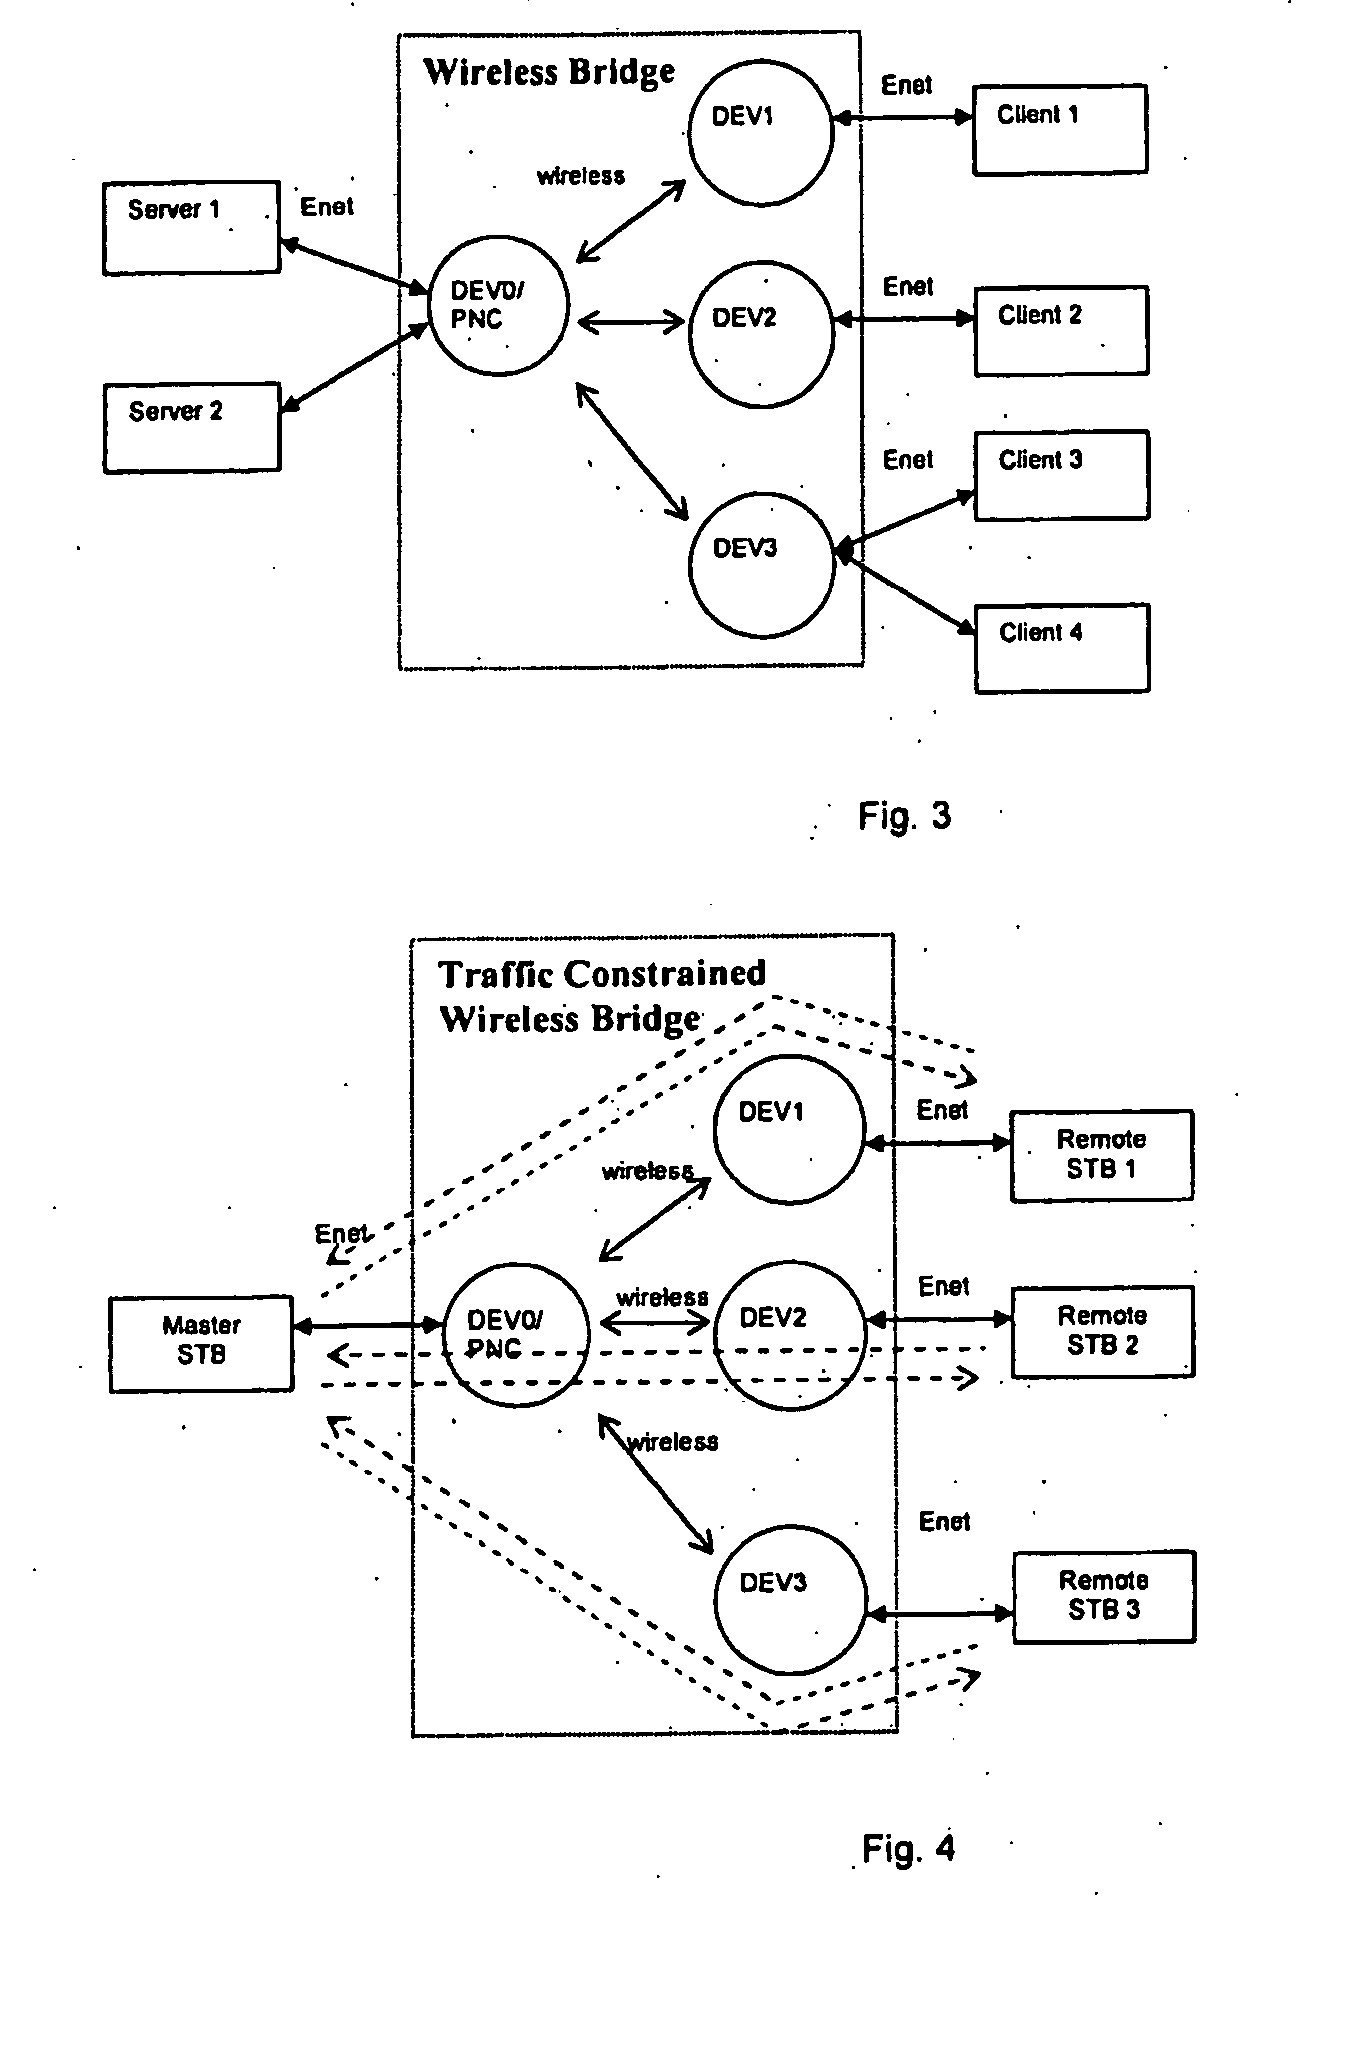 Throughput in a LAN by managing TCP acks